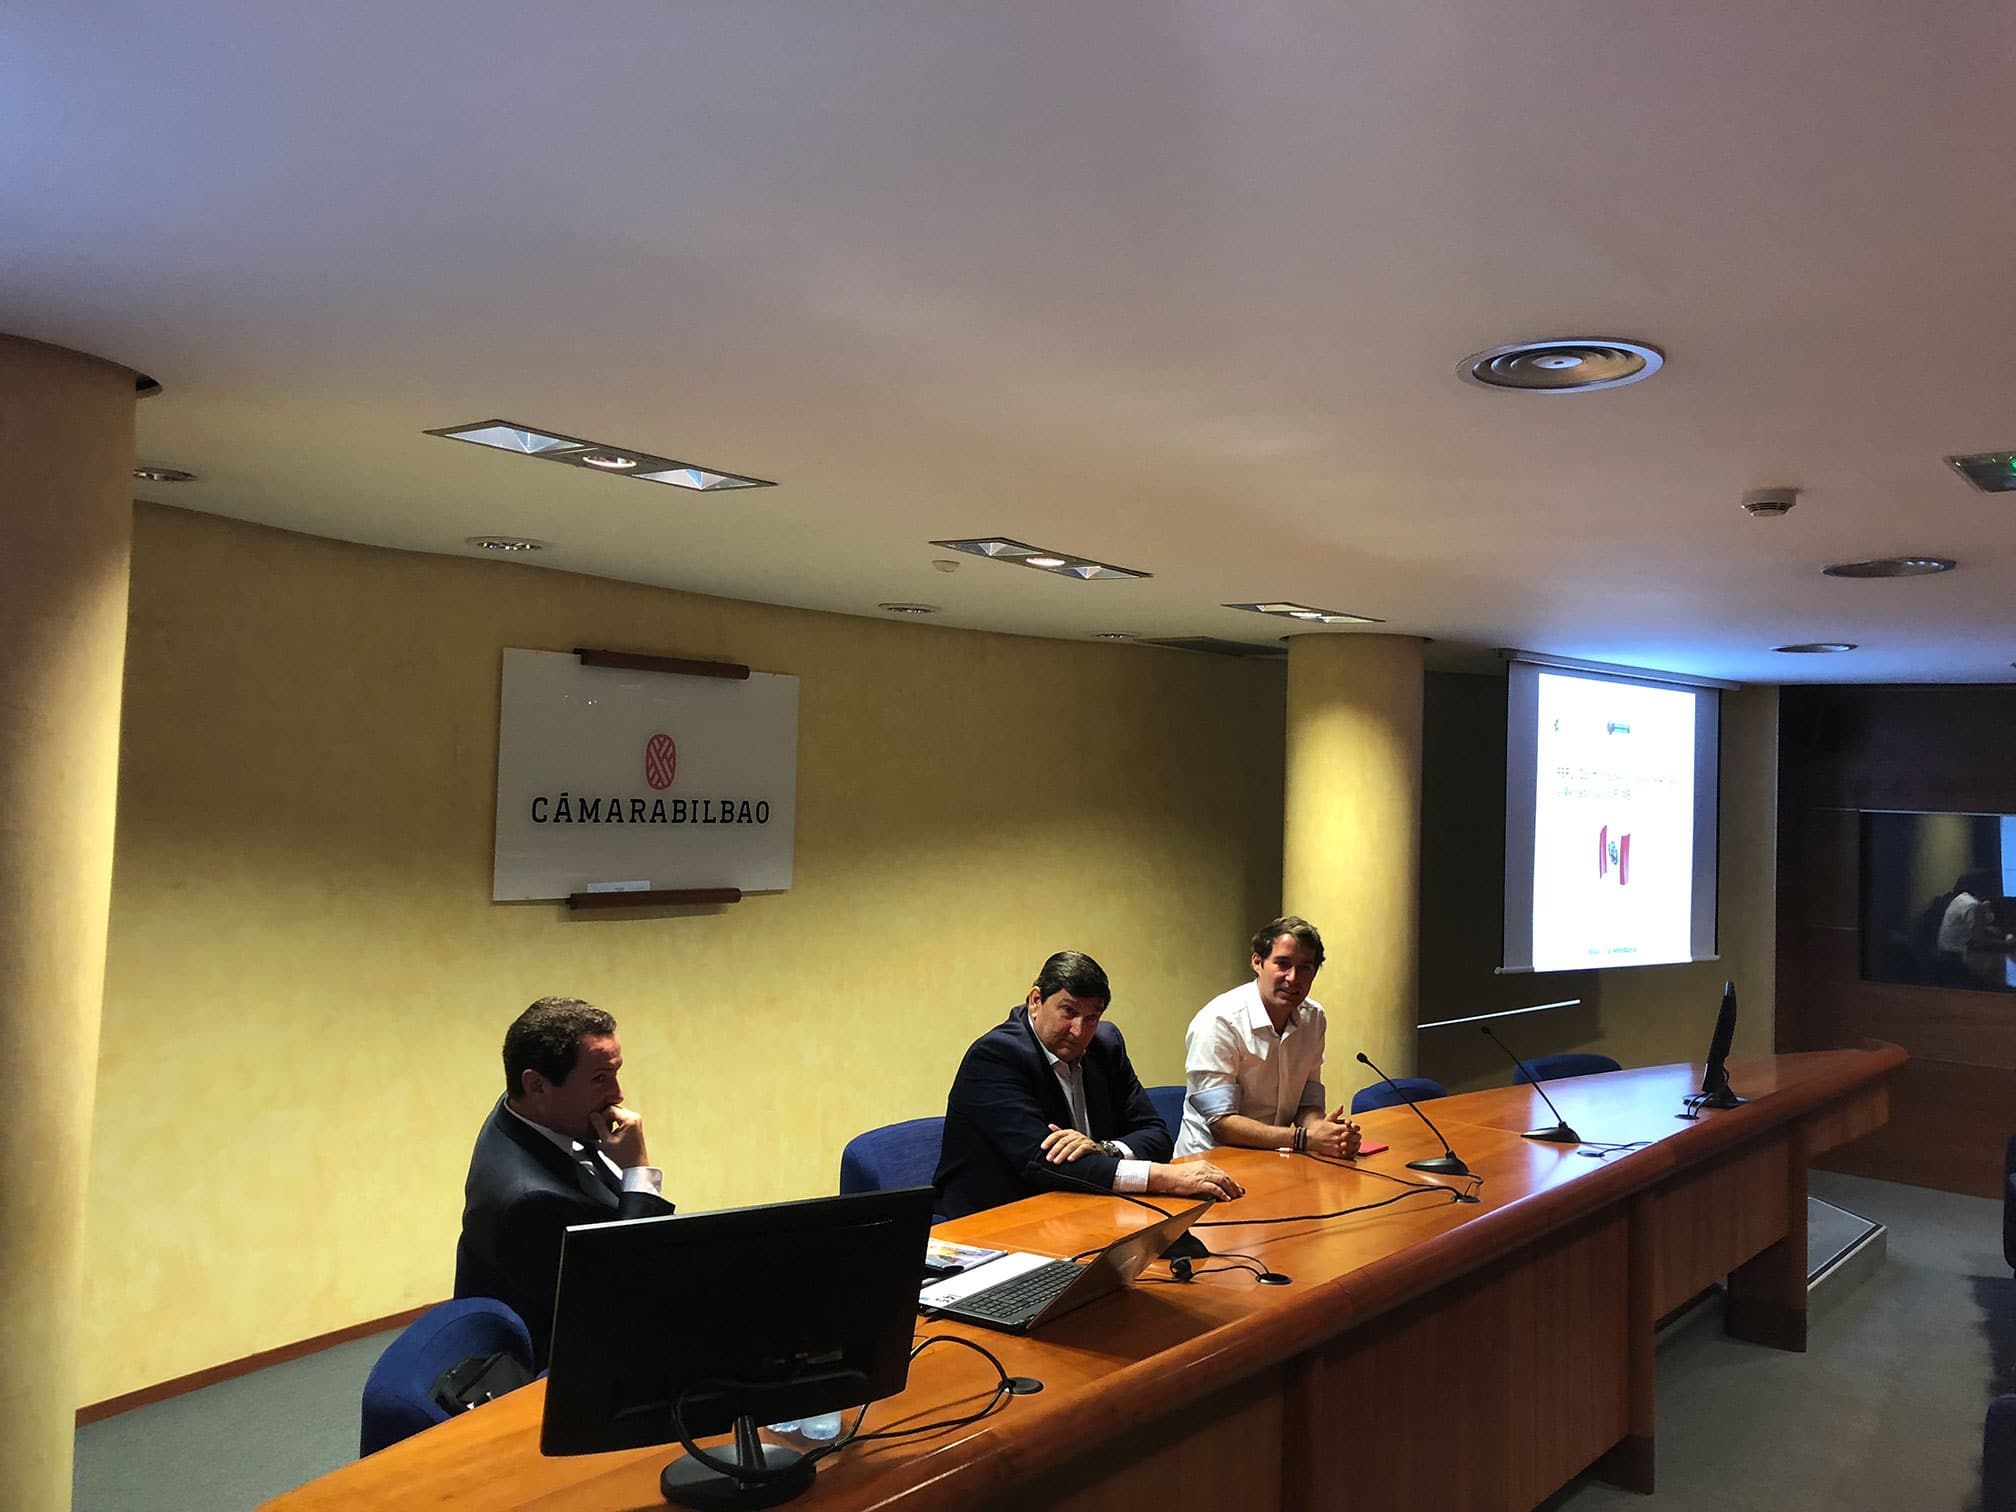 Gestionet ha estado presente en la Cámara de Bilbao en una jornada sobre el comercio y negocio en Perú.